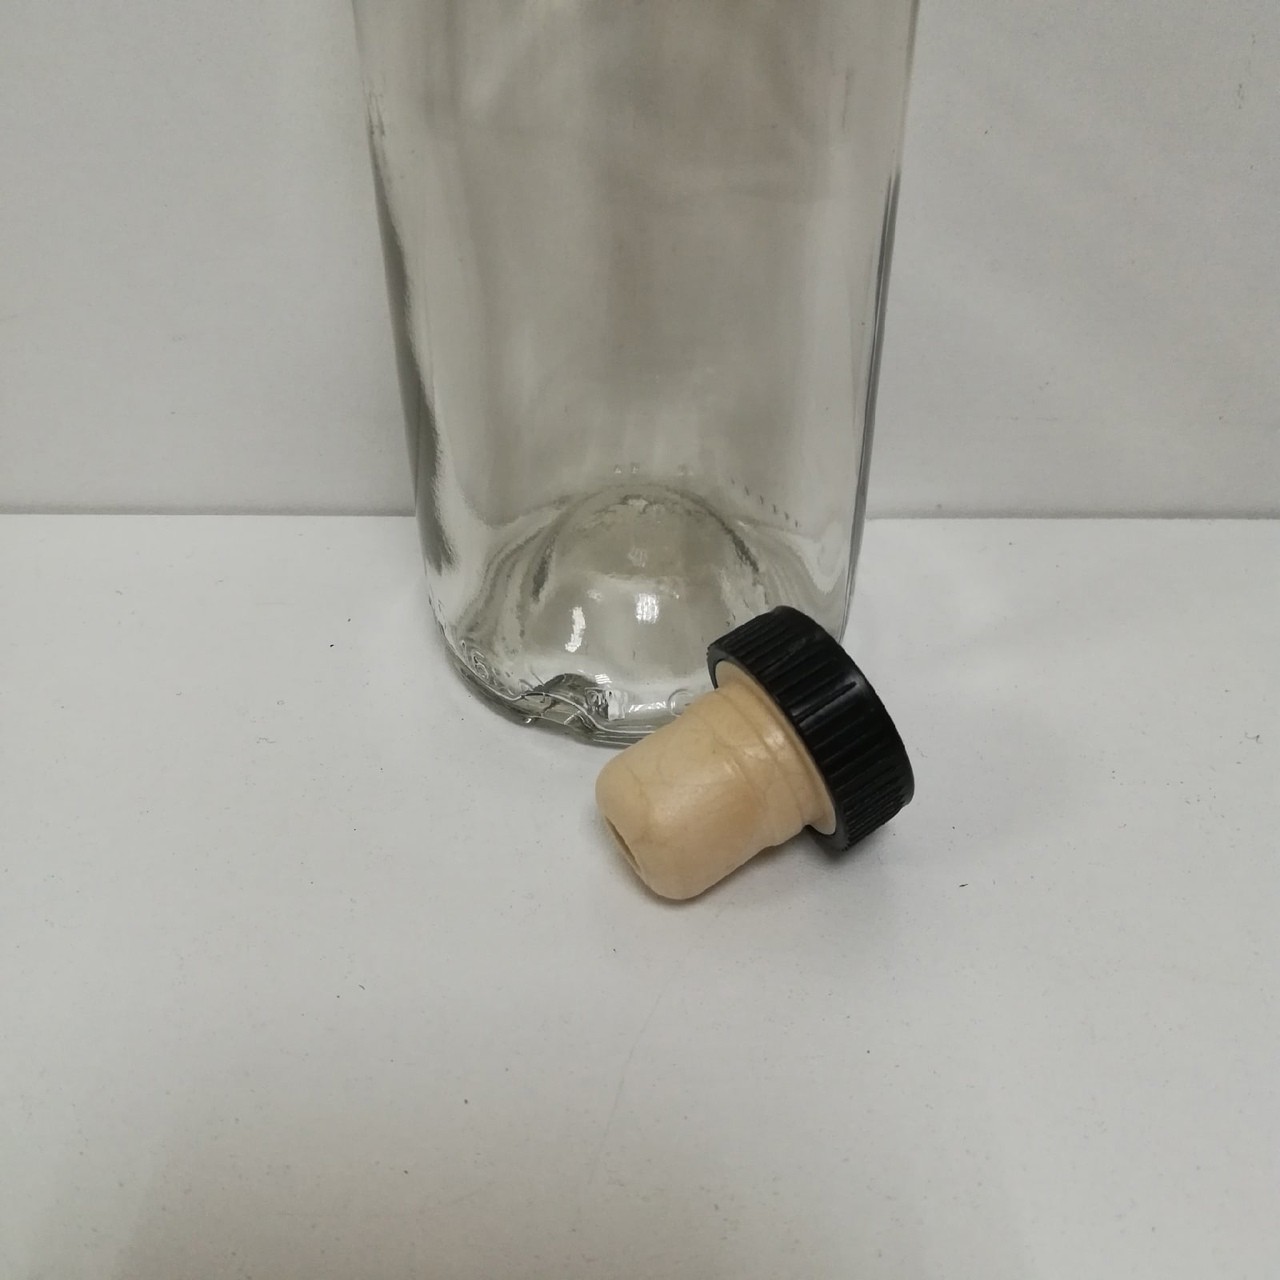 Бутылка Белая березка с пробкой 0